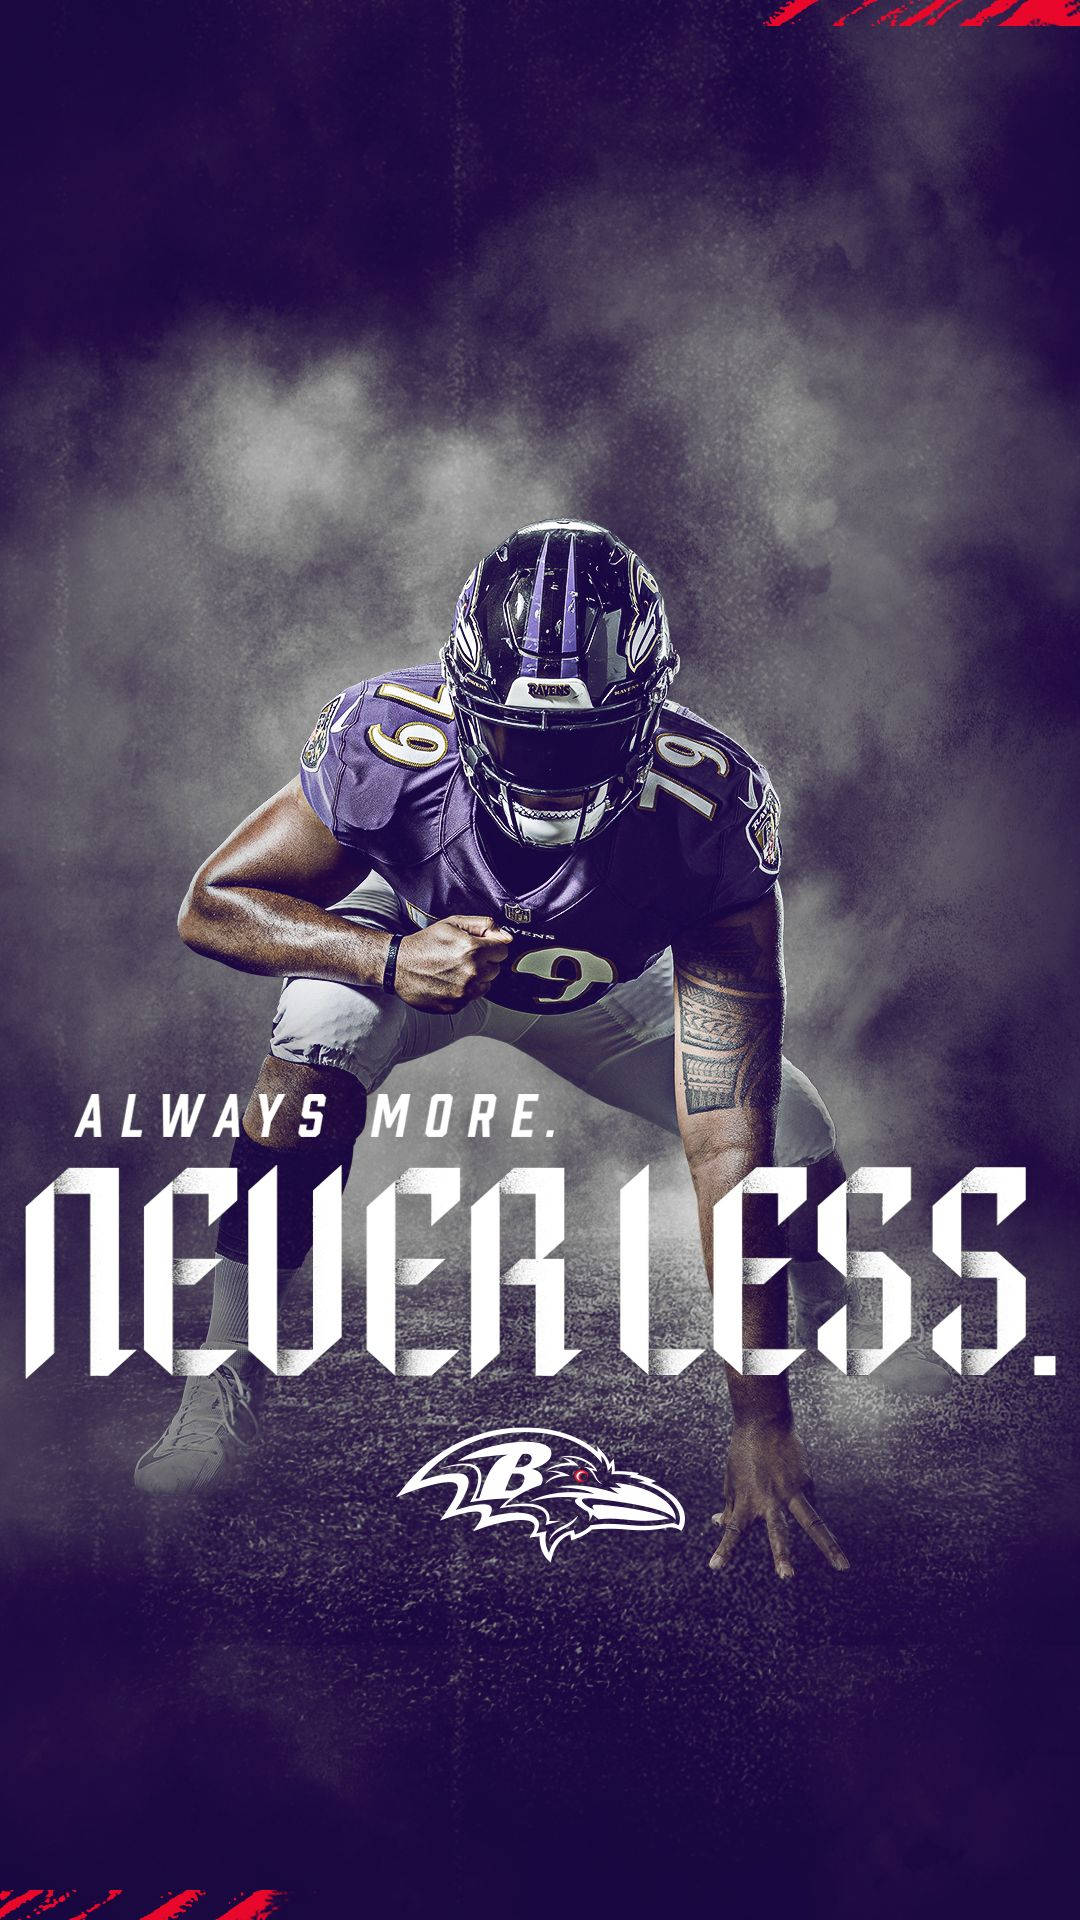 Baltimore Ravens Player Poster Wallpaper